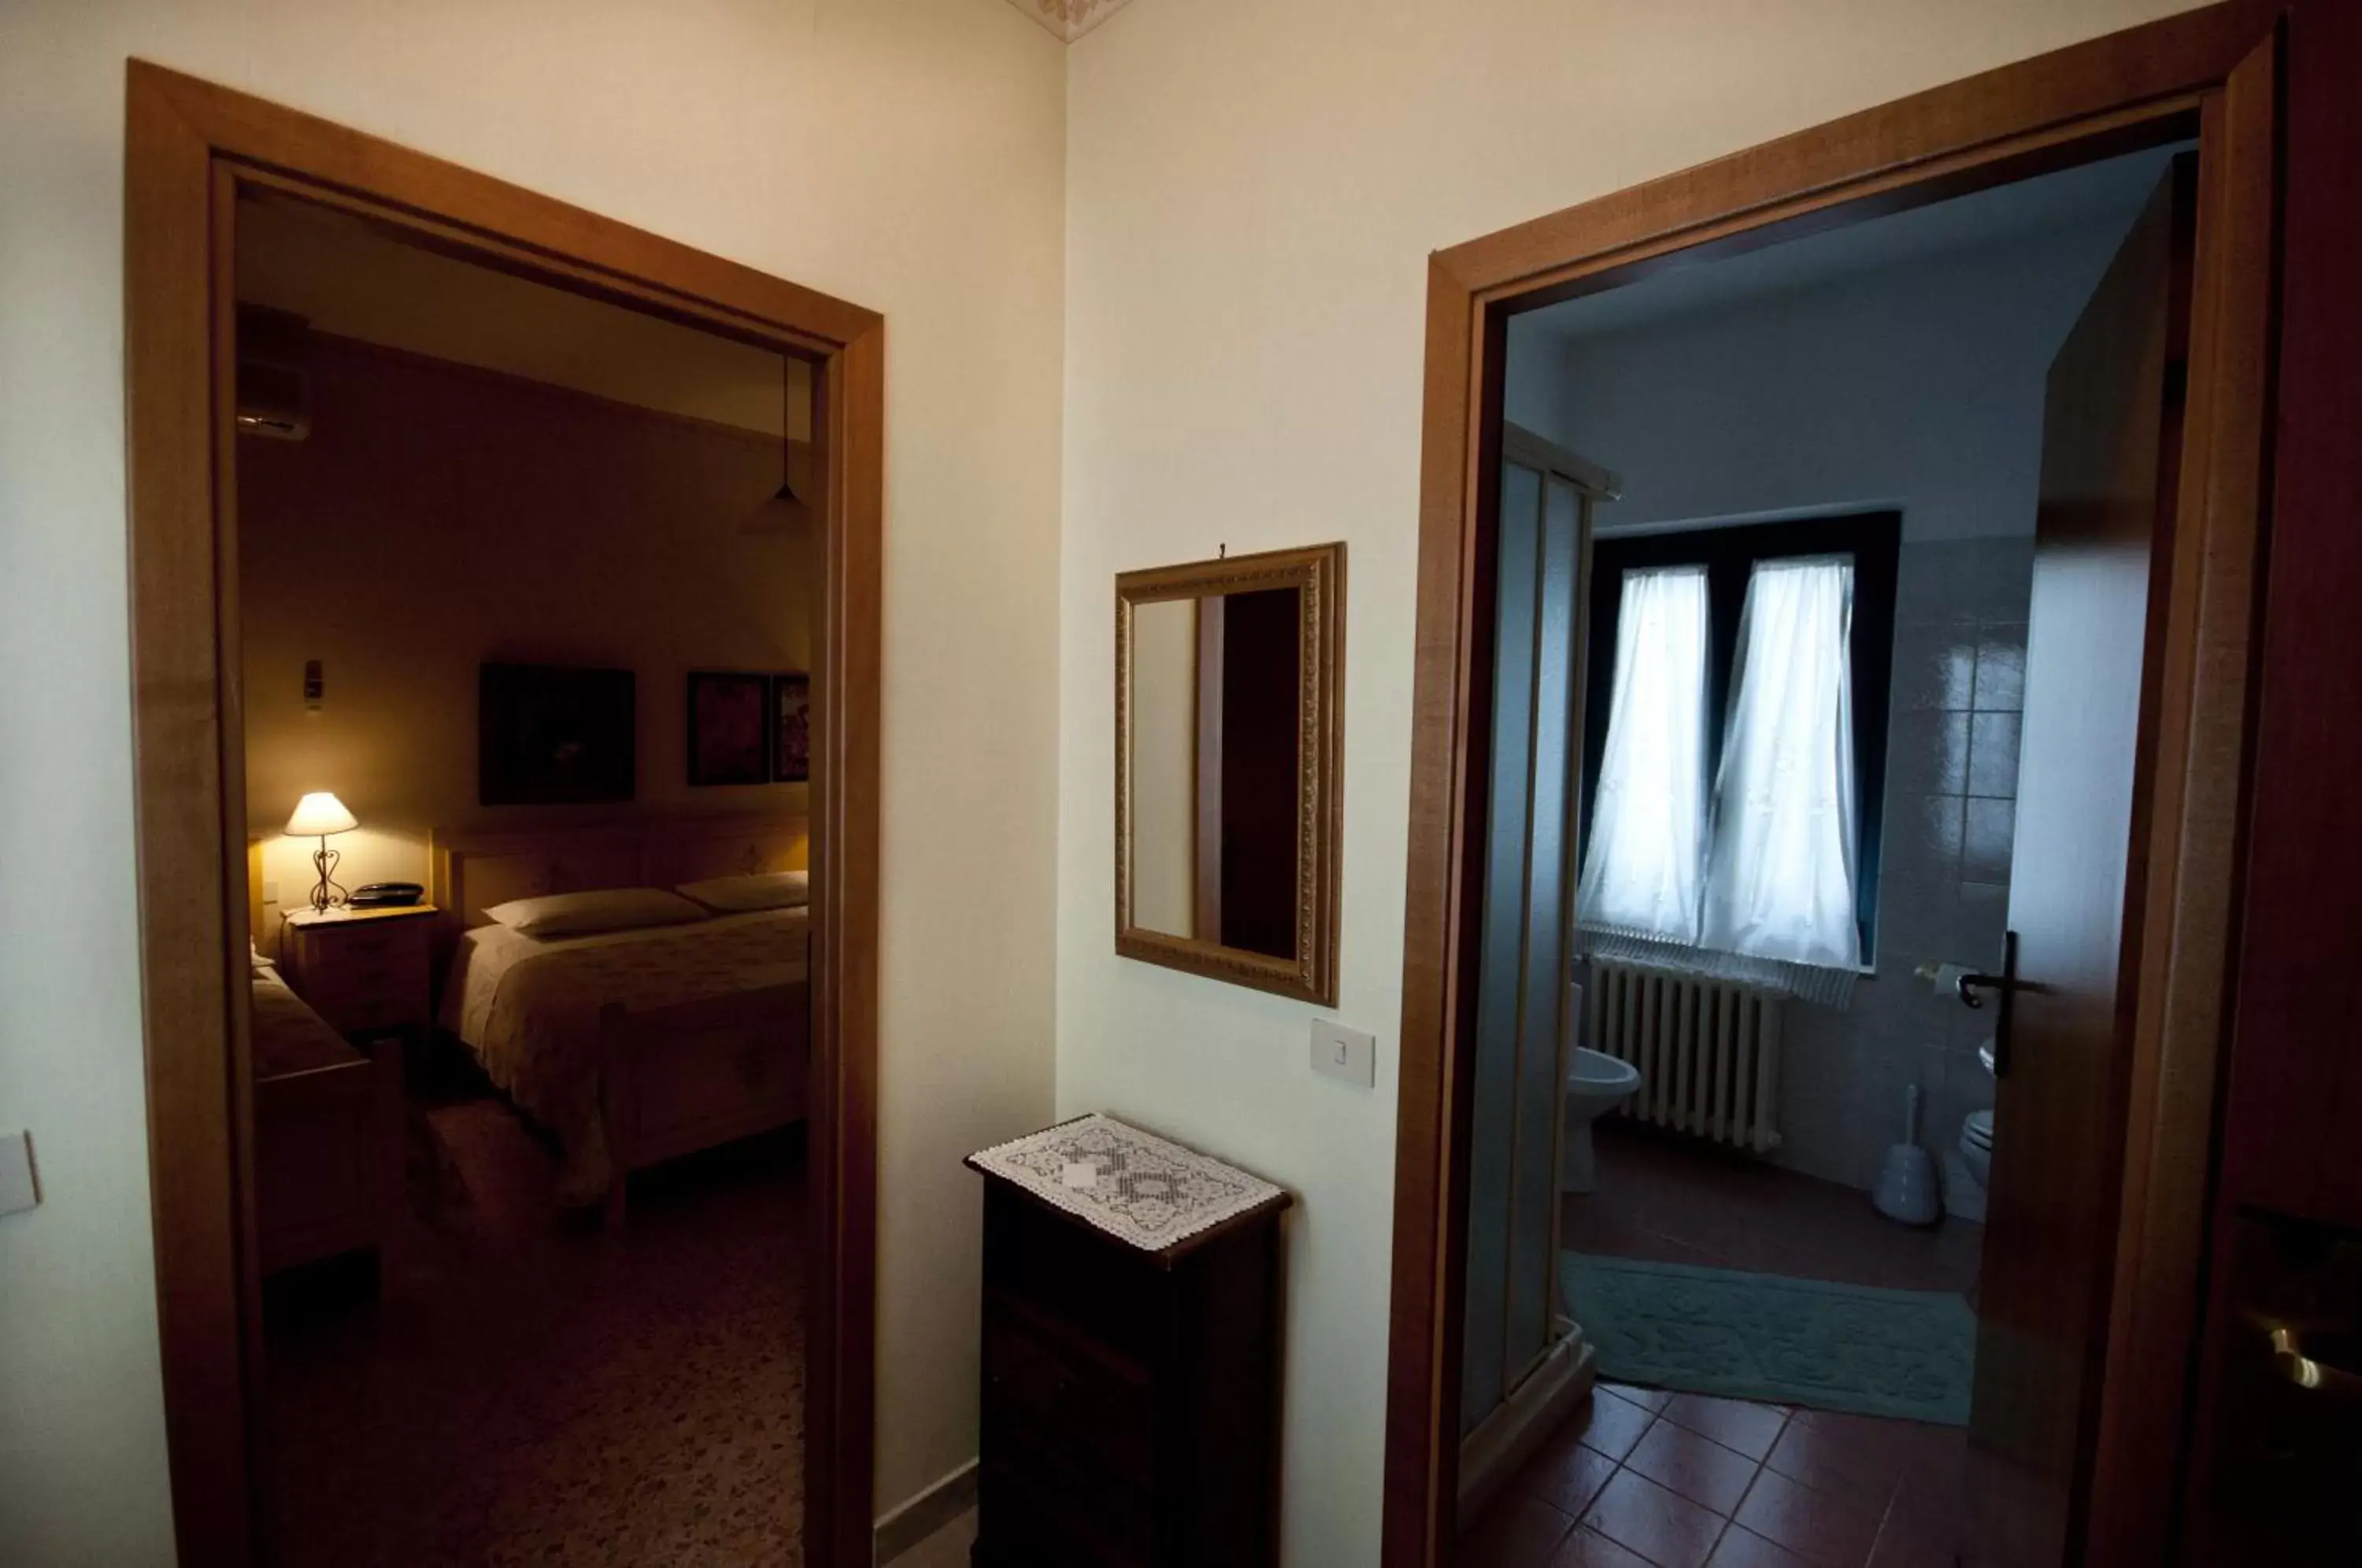 Bedroom, Bathroom in Hotel La Villa